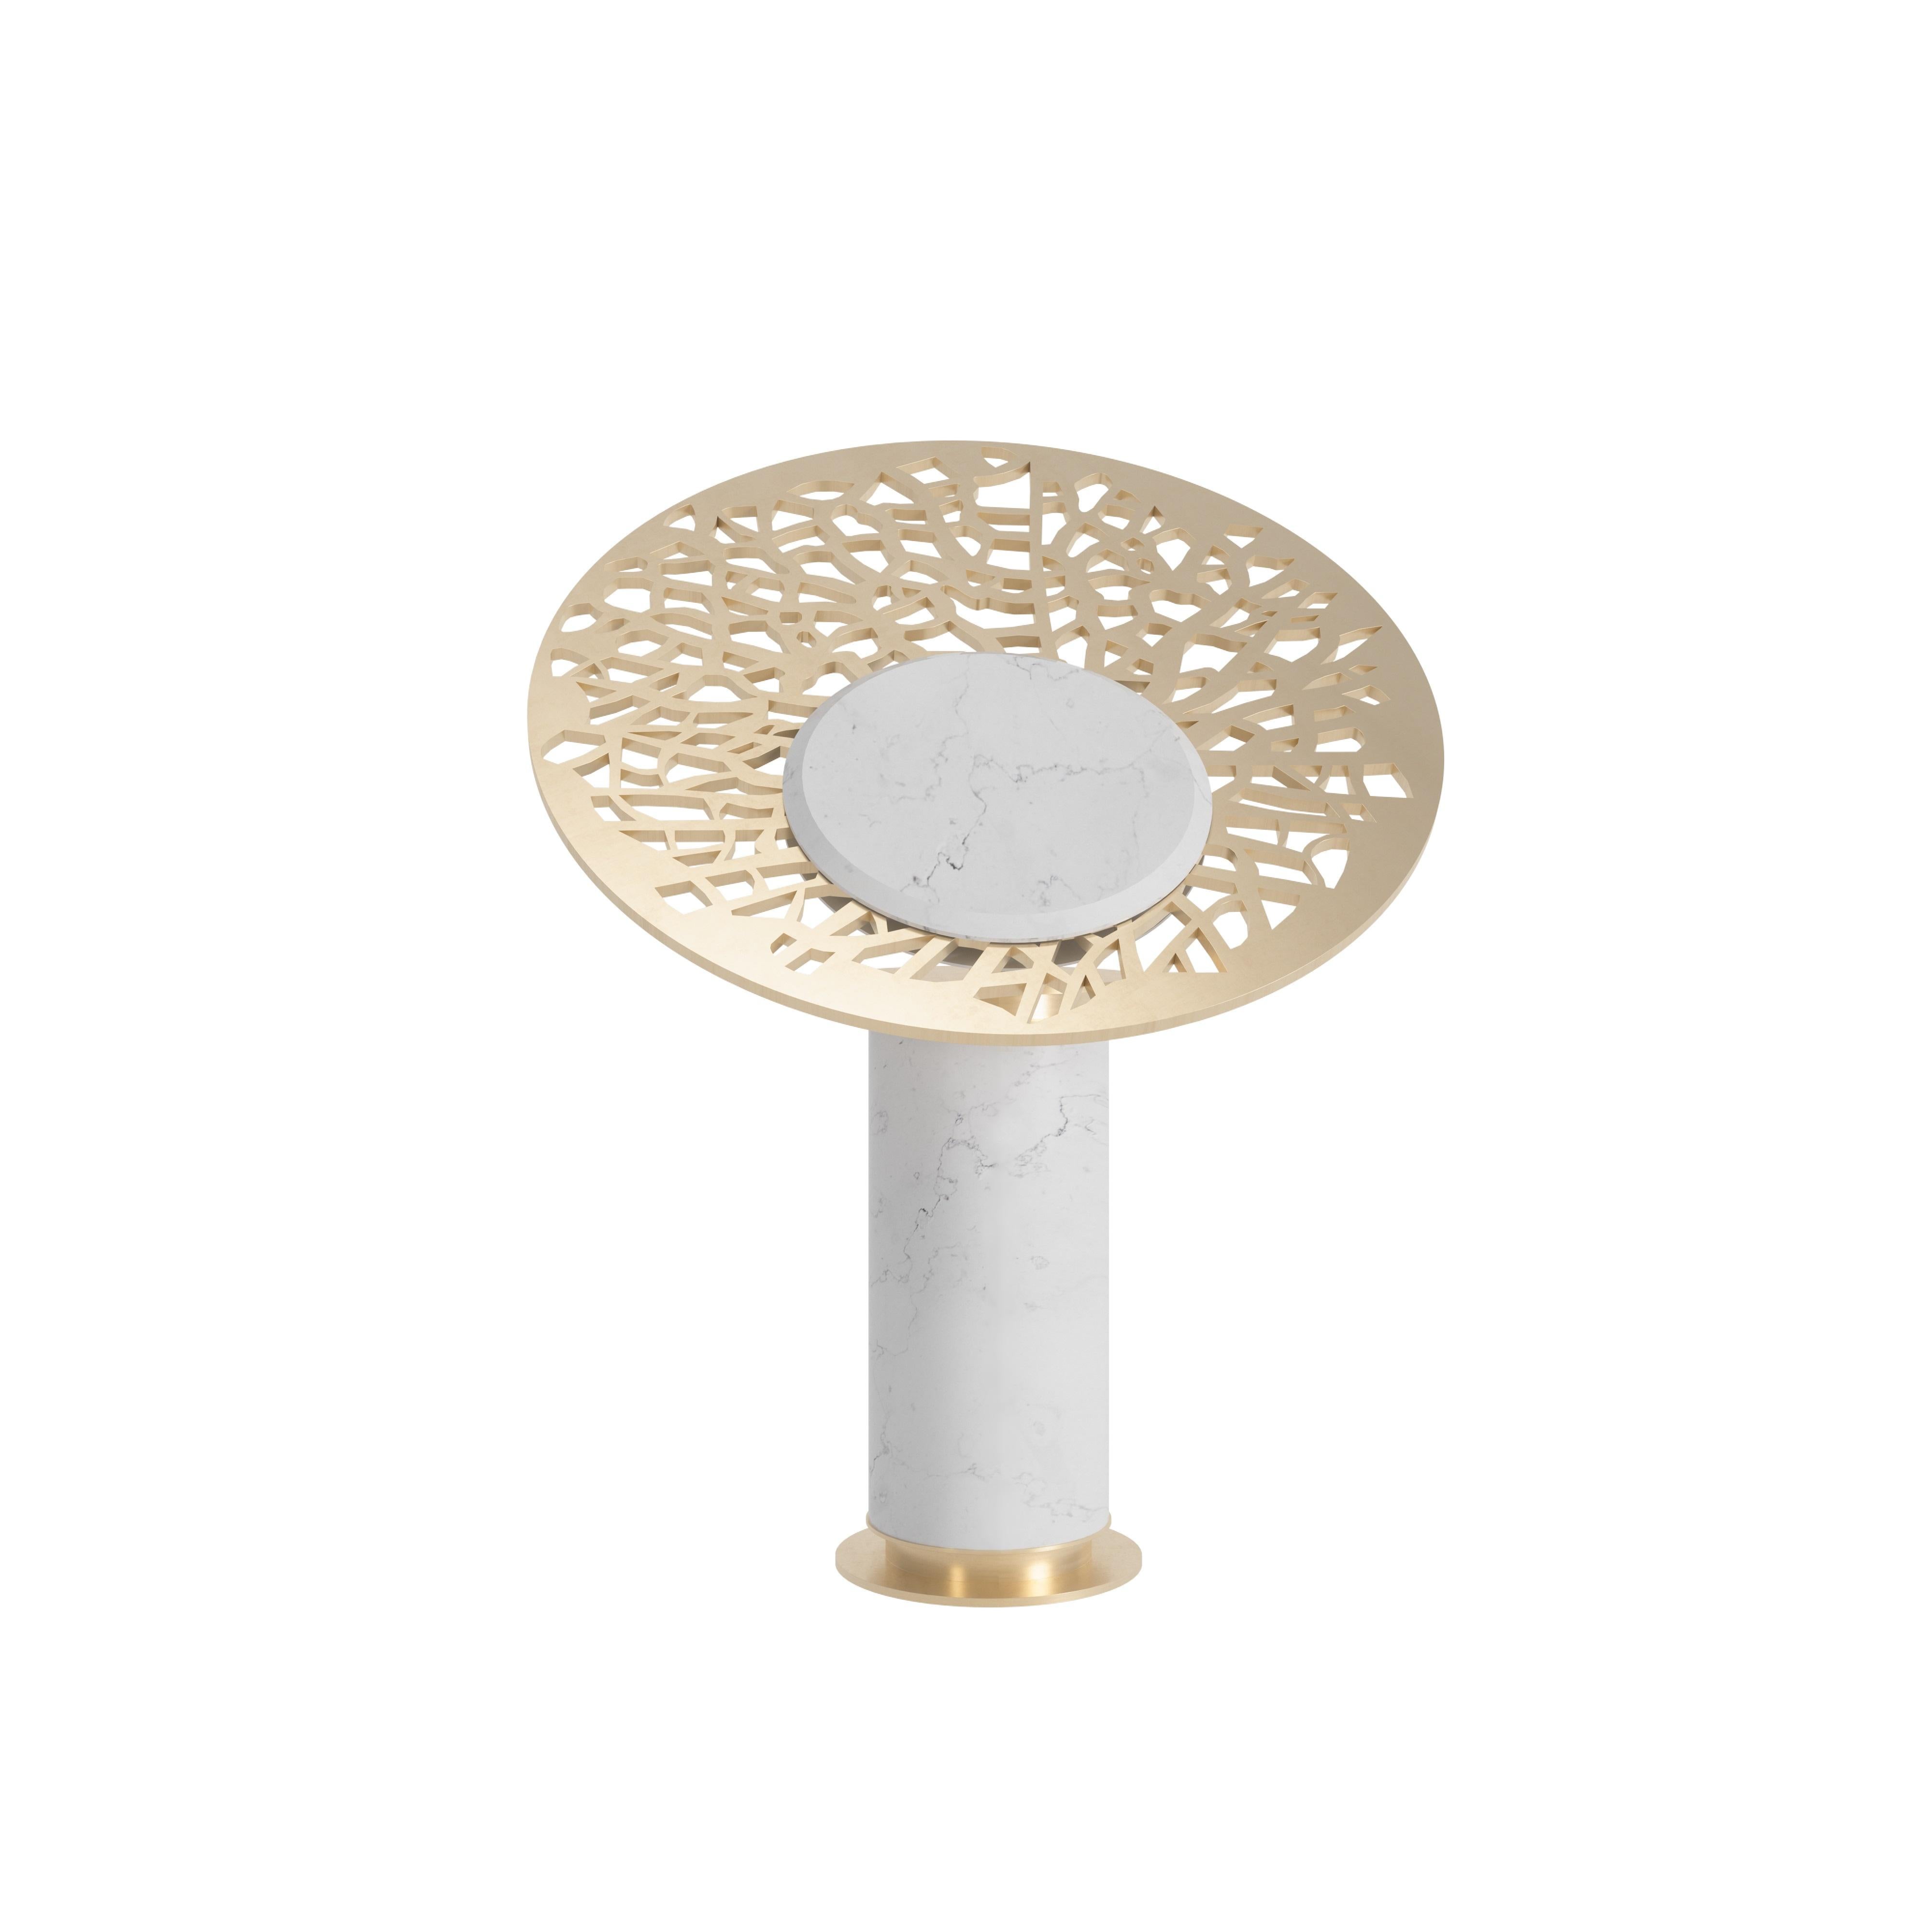 Oddysey-Tischlampe von Memoir Essence
Abmessungen: T 45 x B 45 x H 56 cm.
MATERIALIEN: Gebürstetes Messing und weißer Marmor.

Odyssey Table Lamp ist die neue Ergänzung der Memoir Lighting Collection'S. Die Kombination von runden Marmor- und